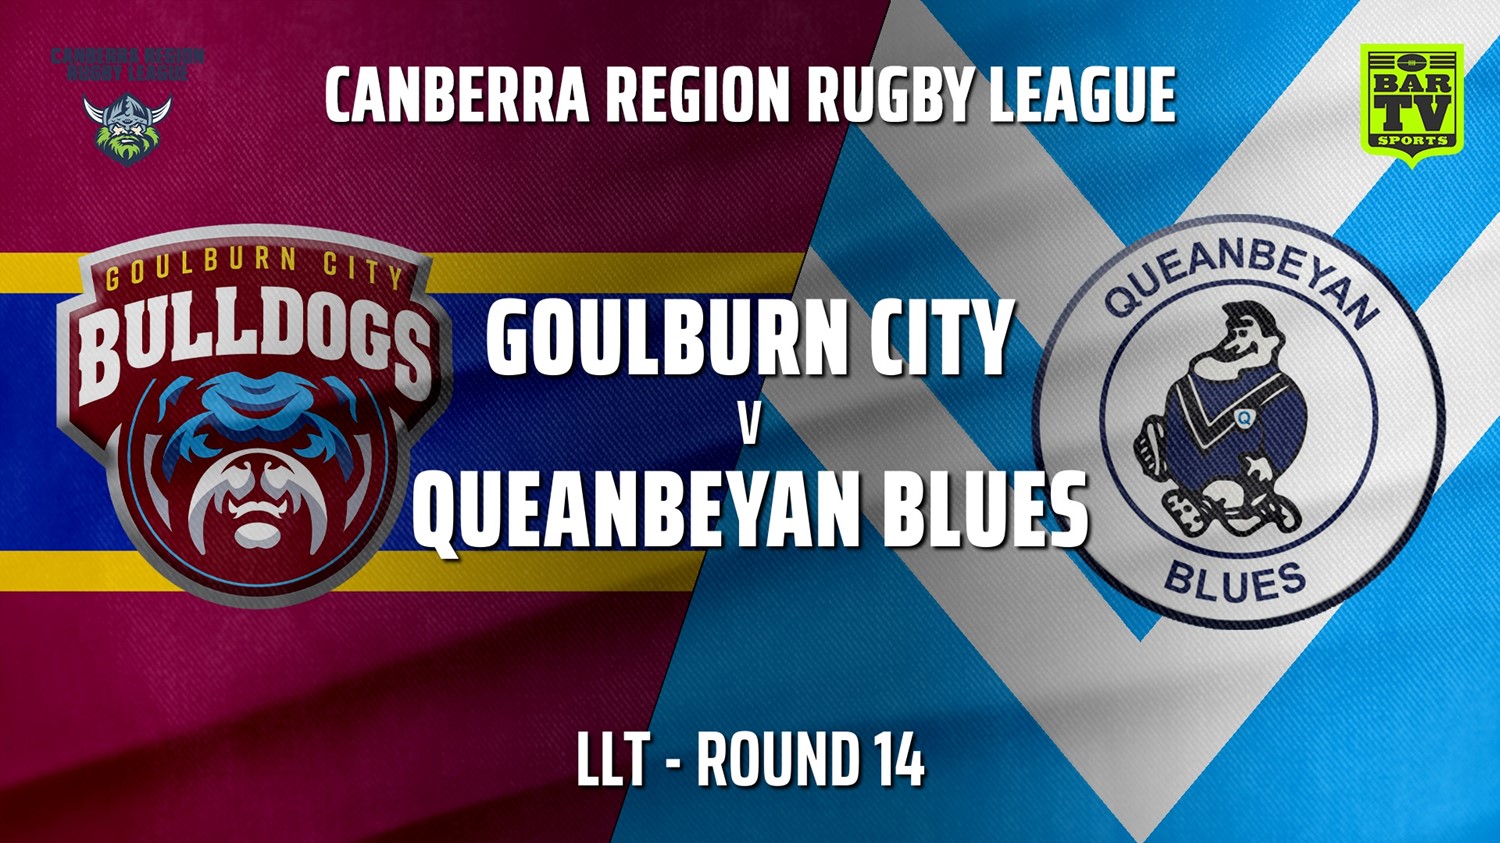 210801-Canberra Round 14 - LLT - Goulburn City Bulldogs v Queanbeyan Blues Slate Image